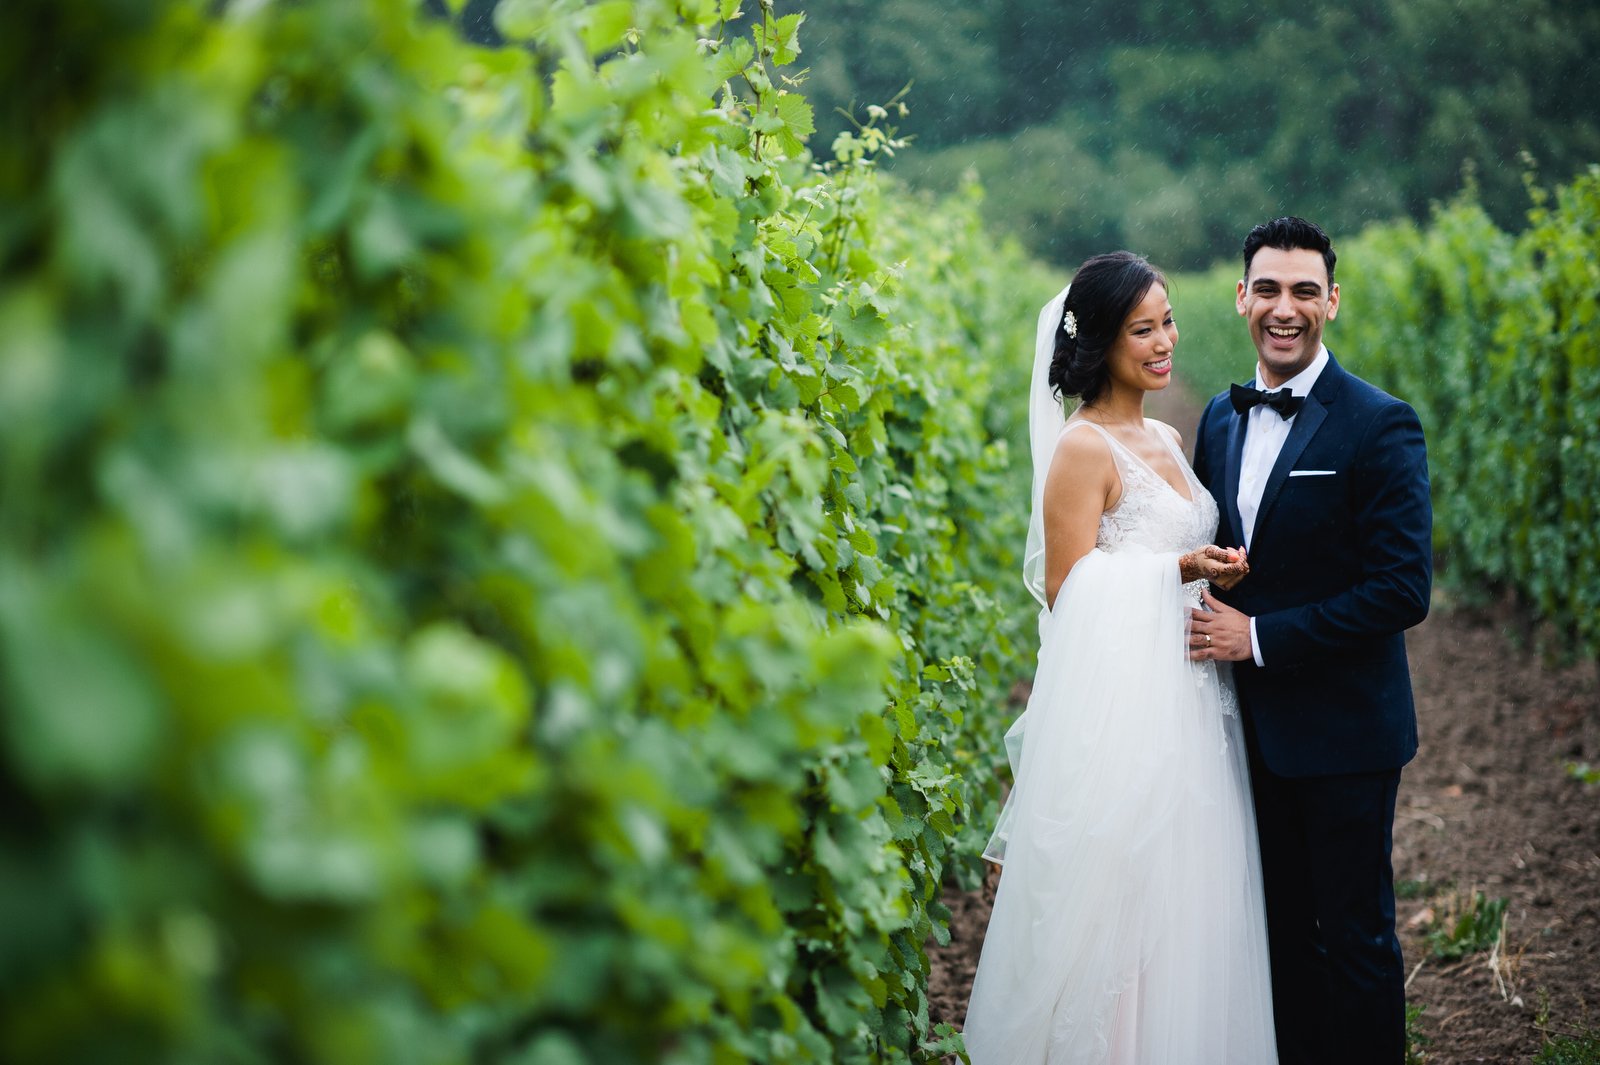 donna adil niagara vineyard wedding photography jenn dave stark 111